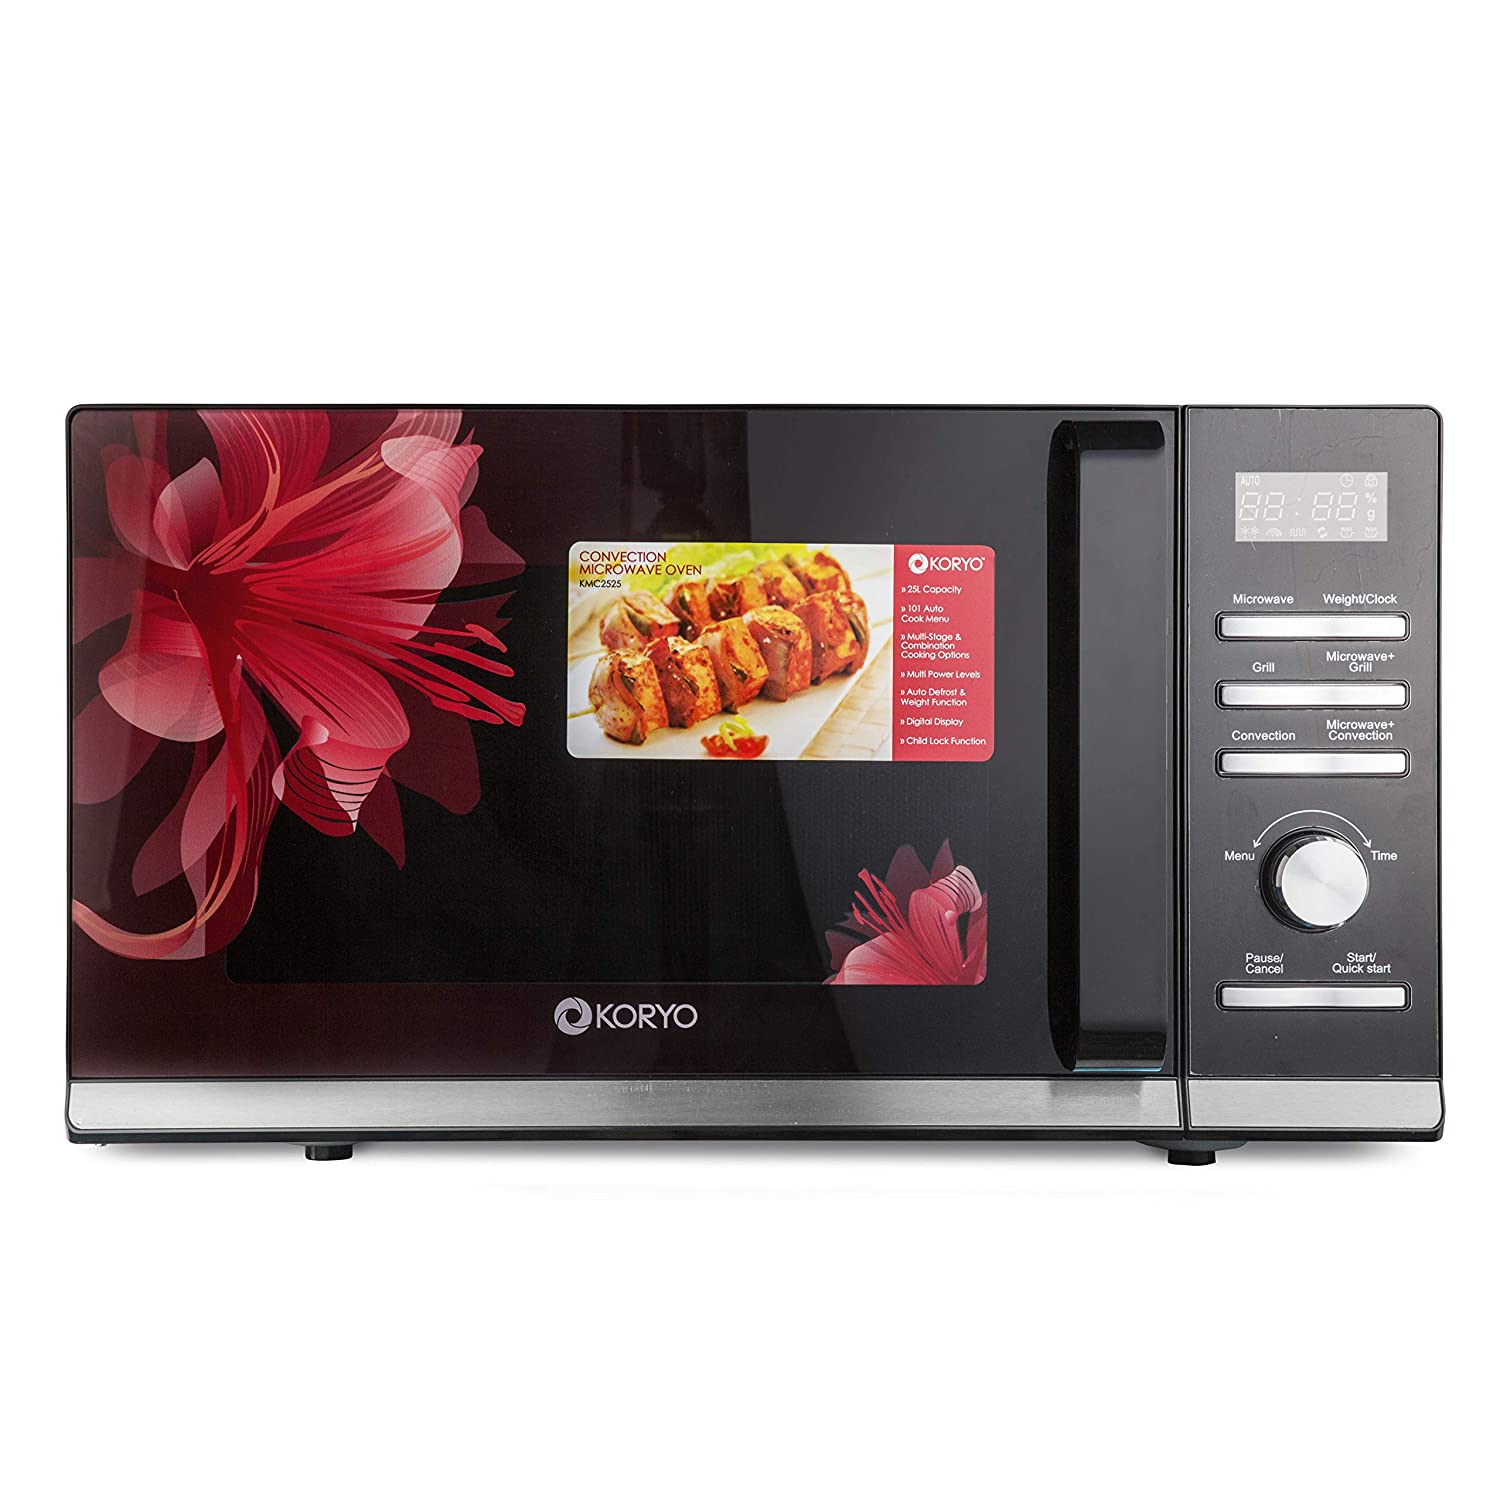 koryo microwave oven